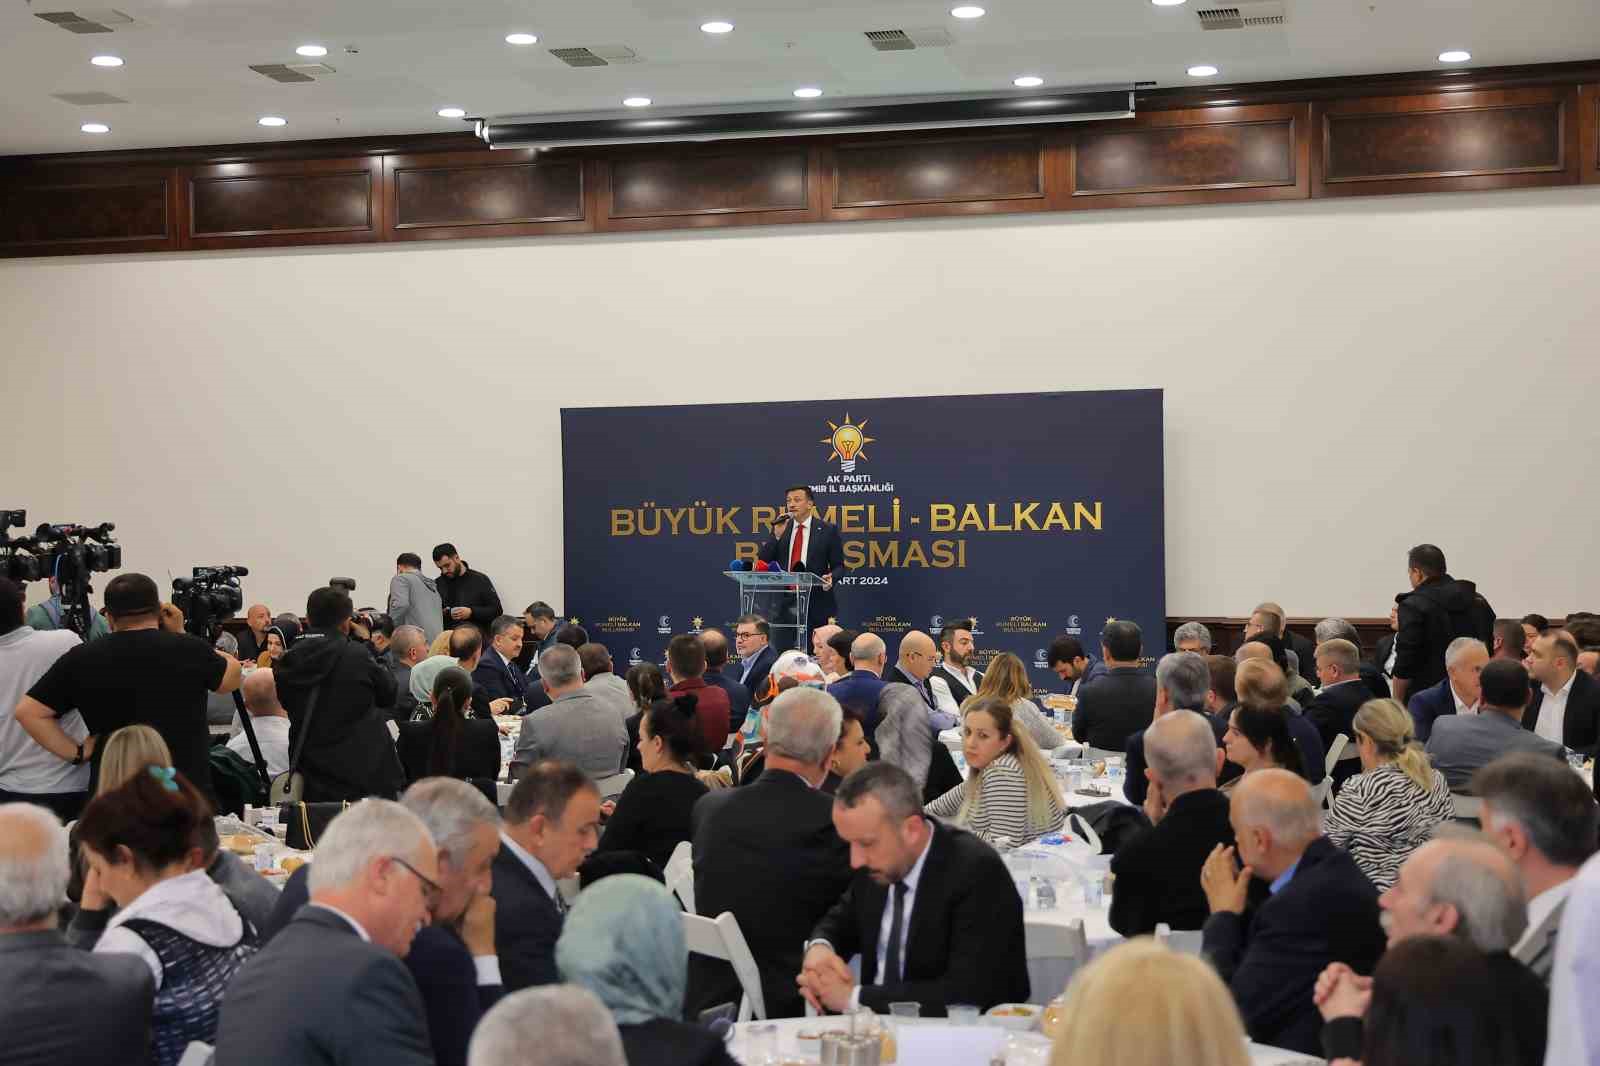 Hamza Dağ: “Balkan Türkleri gibi çalışıp, projeleri hayat geçireceğiz”